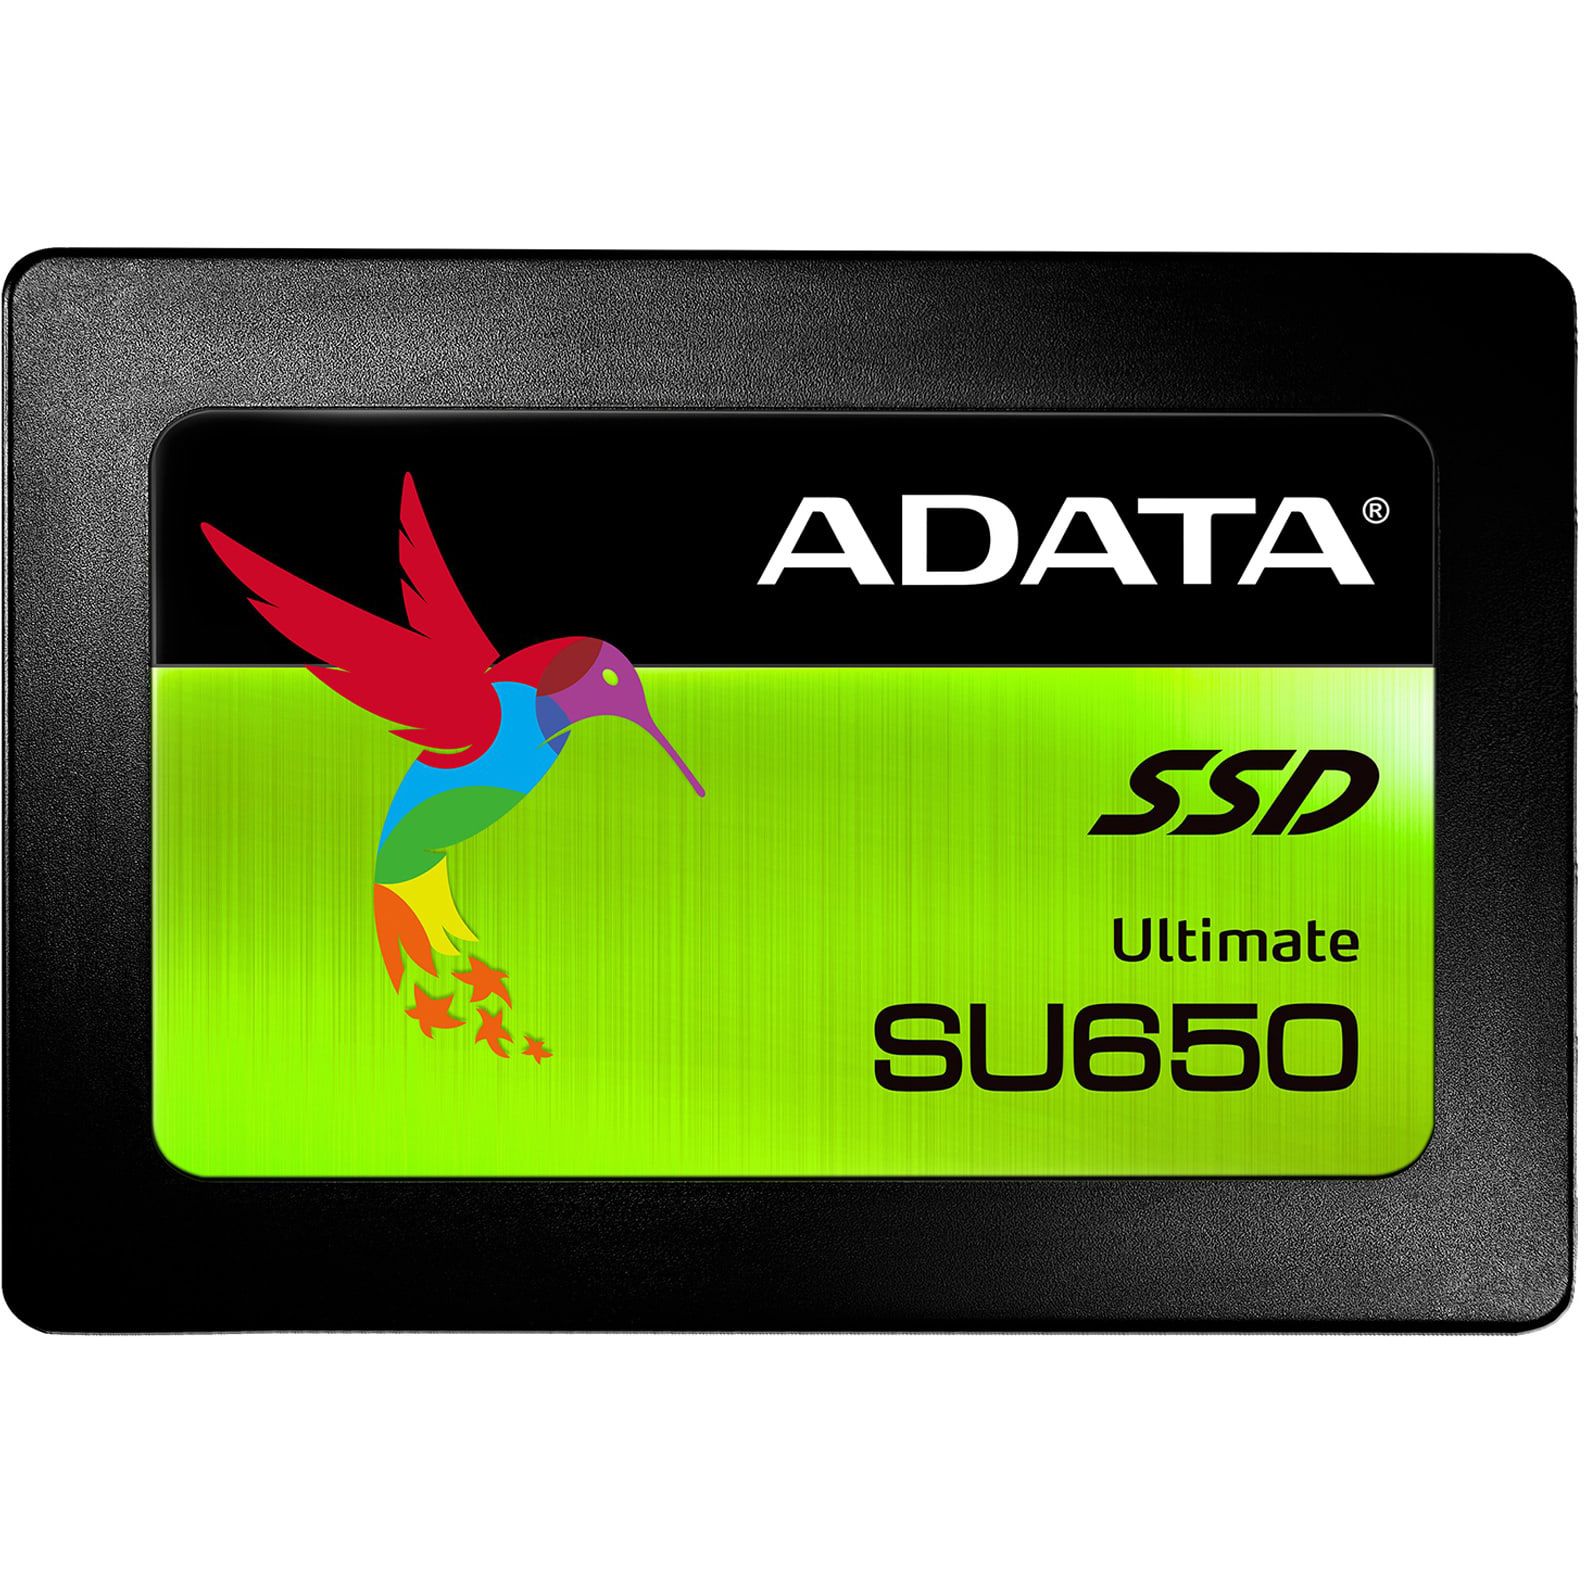 Hard disk ssd a-data ultimate su650 120gb 2.5 inch black box